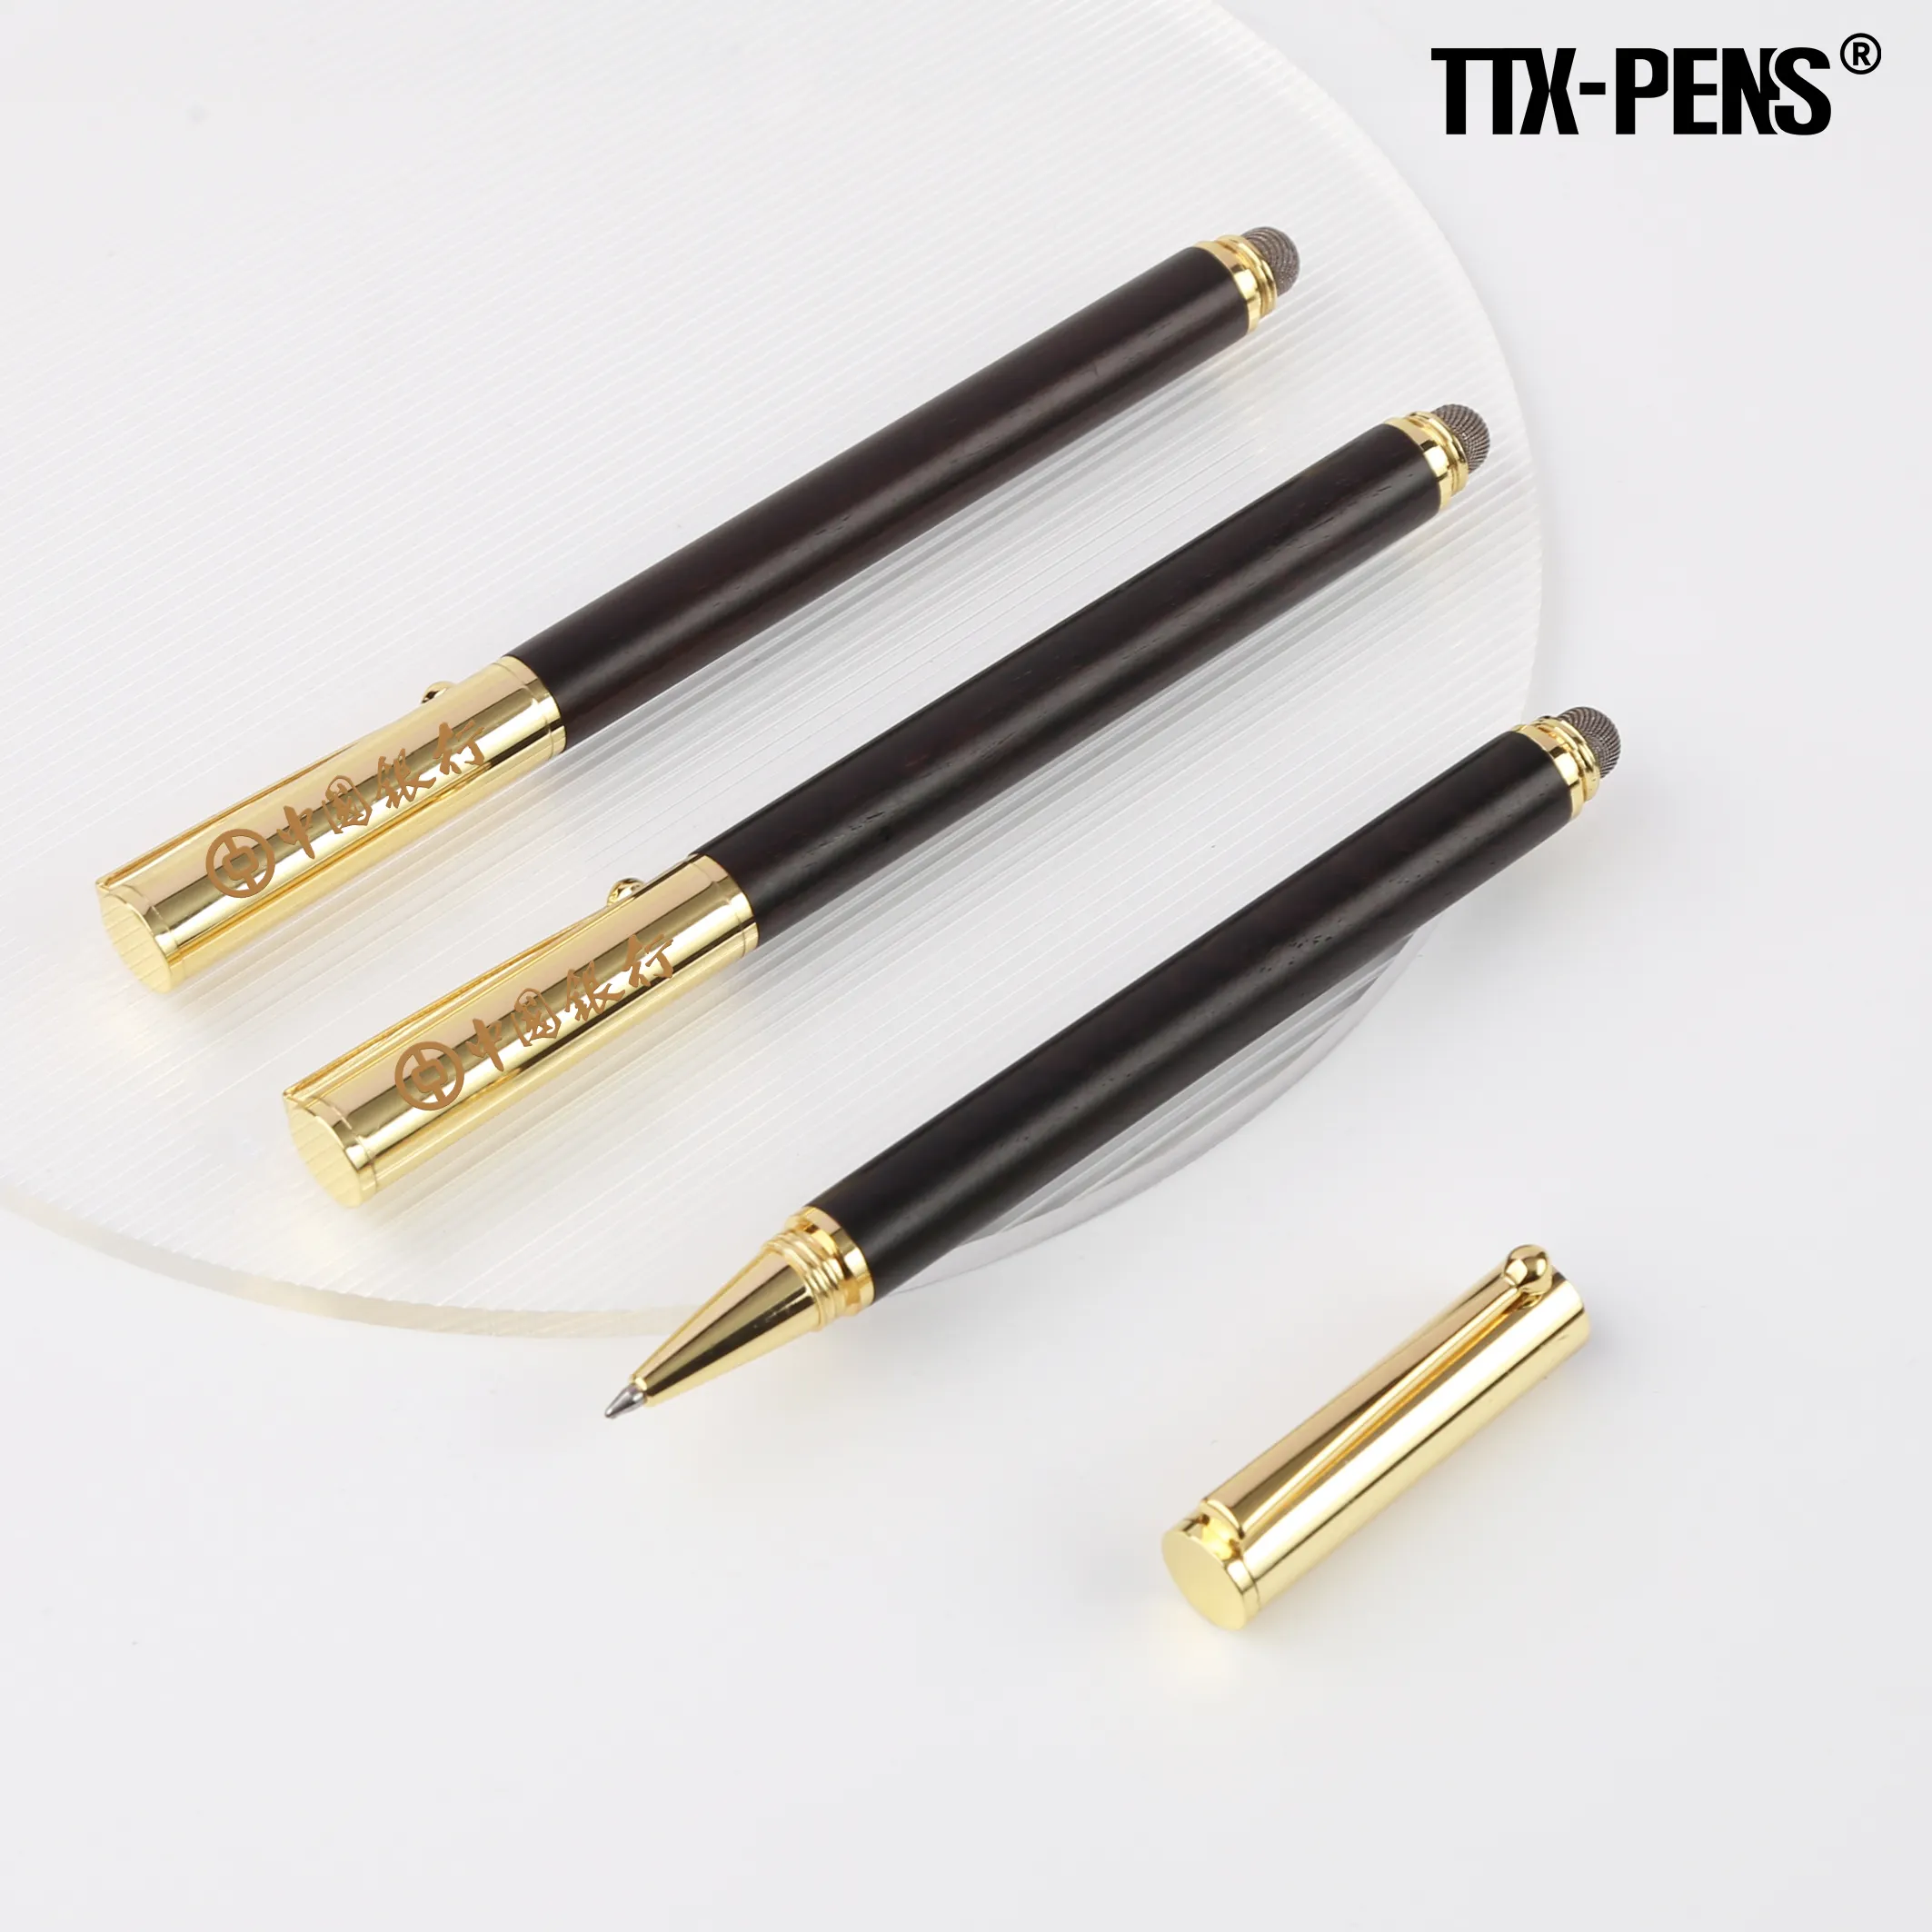 TTTX di buona qualità di lusso 2 in 1 nero metallizzato Logo personalizzato multifunzione stilo a sfera in metallo Touch Pen